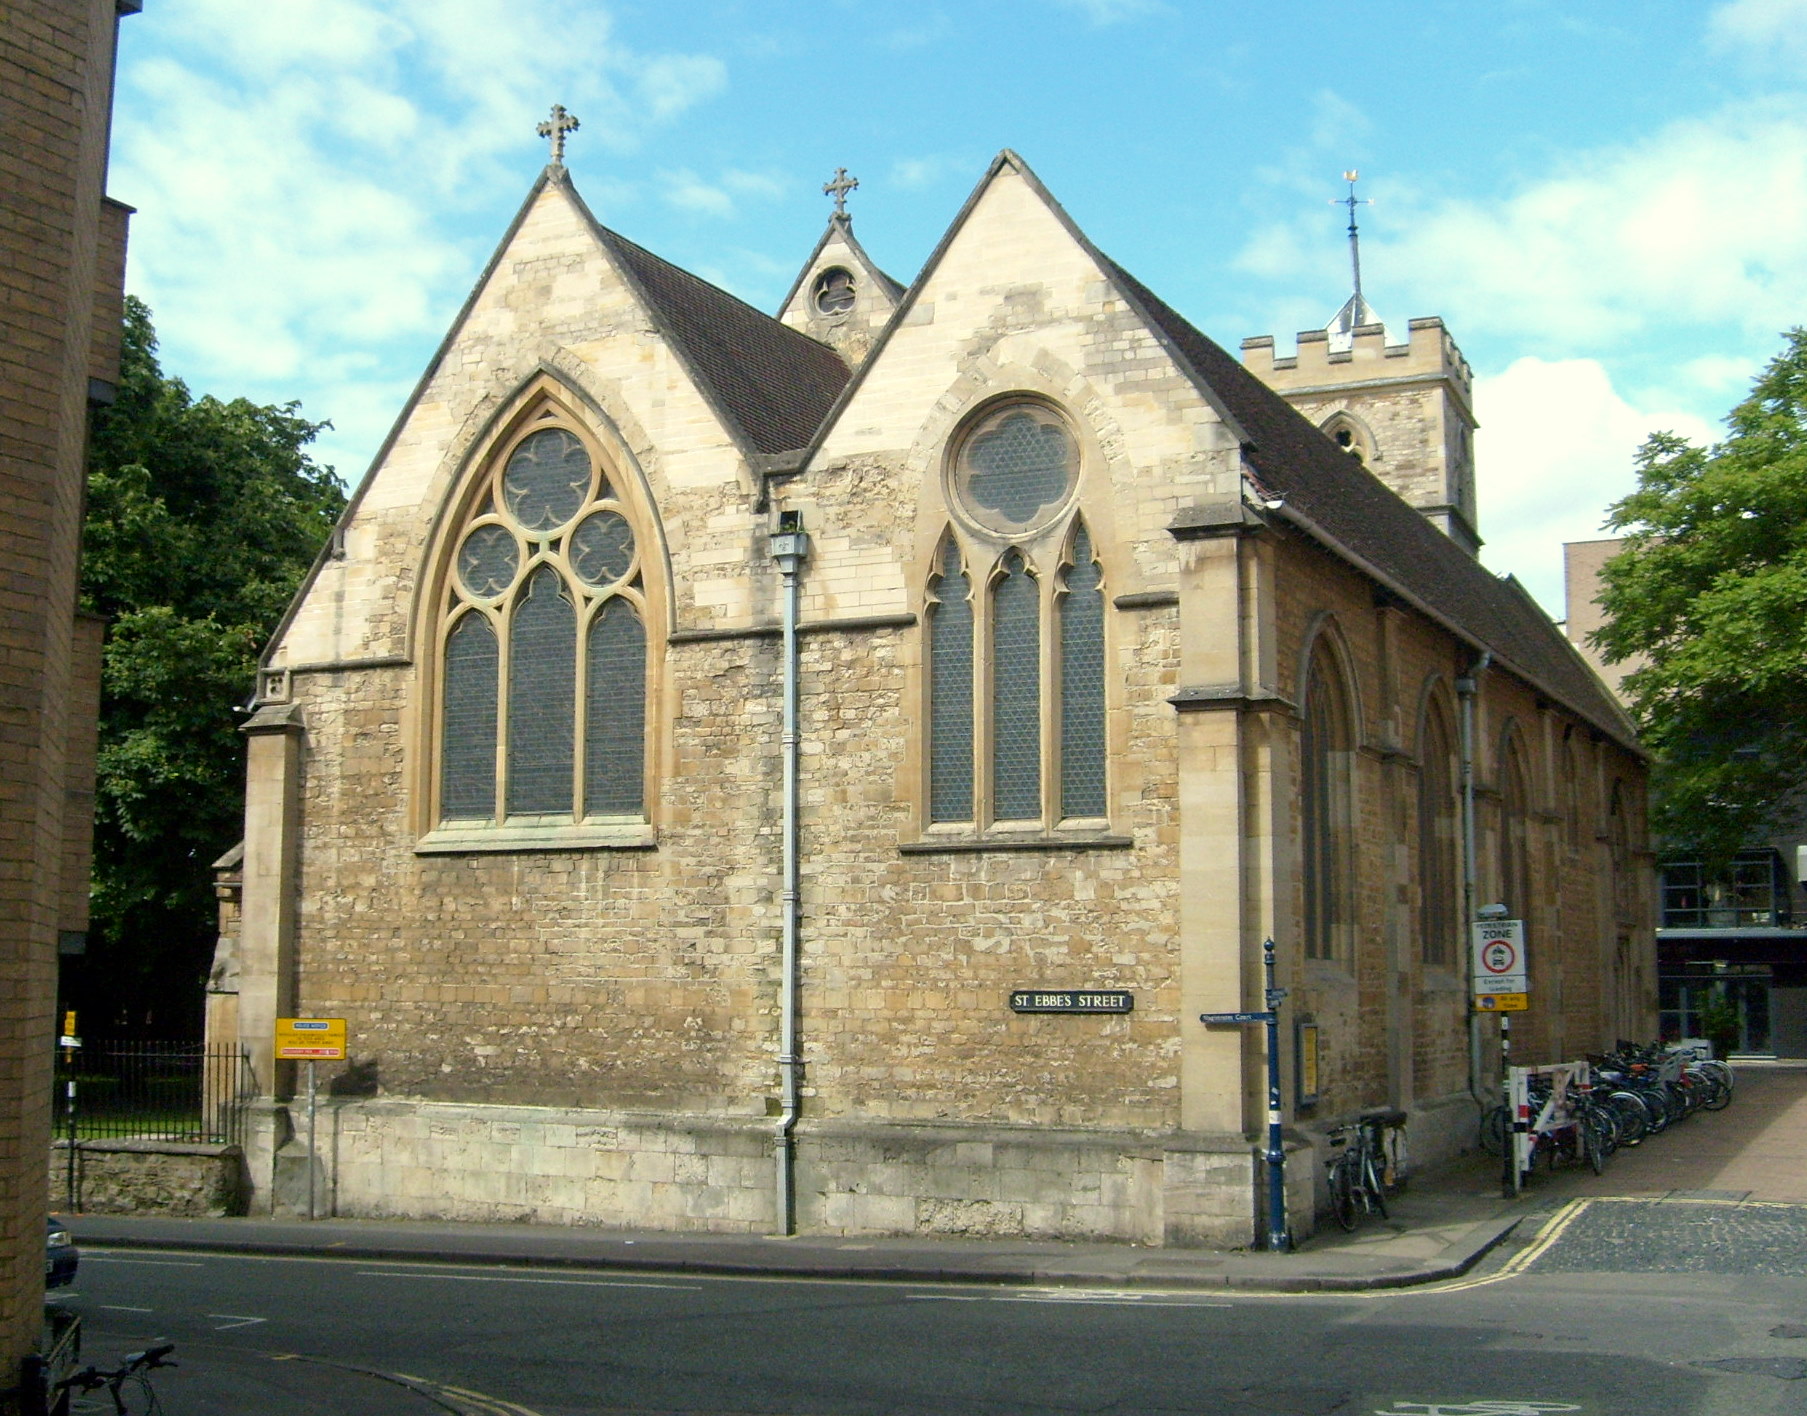 St Ebbe's Church, Oxford trip planner